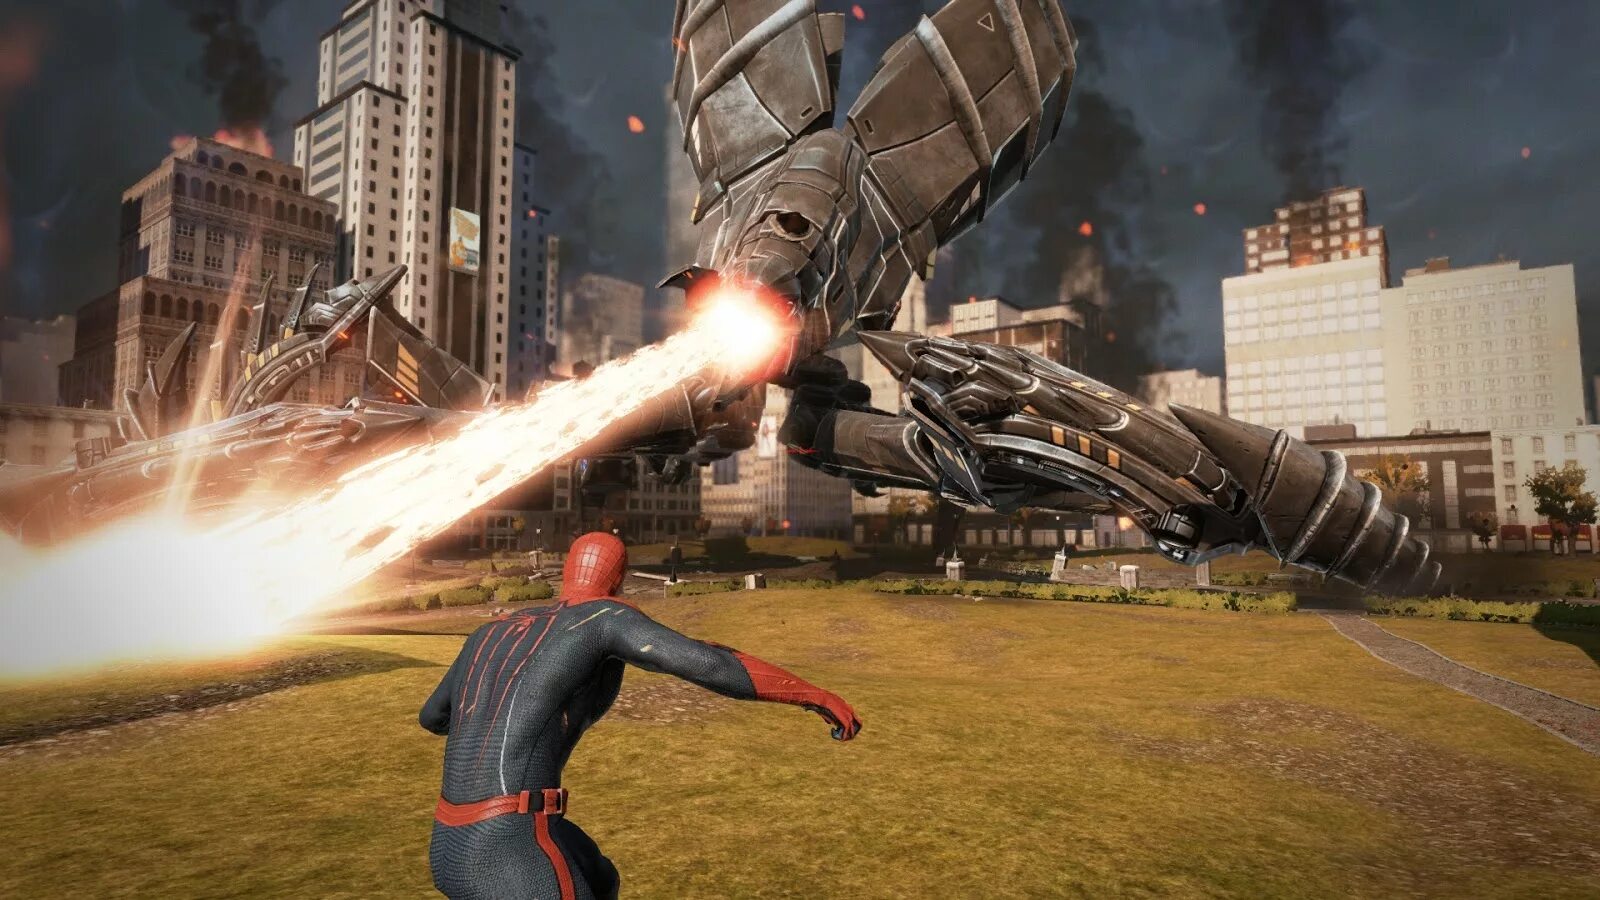 Spider man 2014 игра. The amazing Spider-man игра. The amazing Spider-man 2 игра. Человек паук игра 2012. The amazing Spider-man 1 игра.